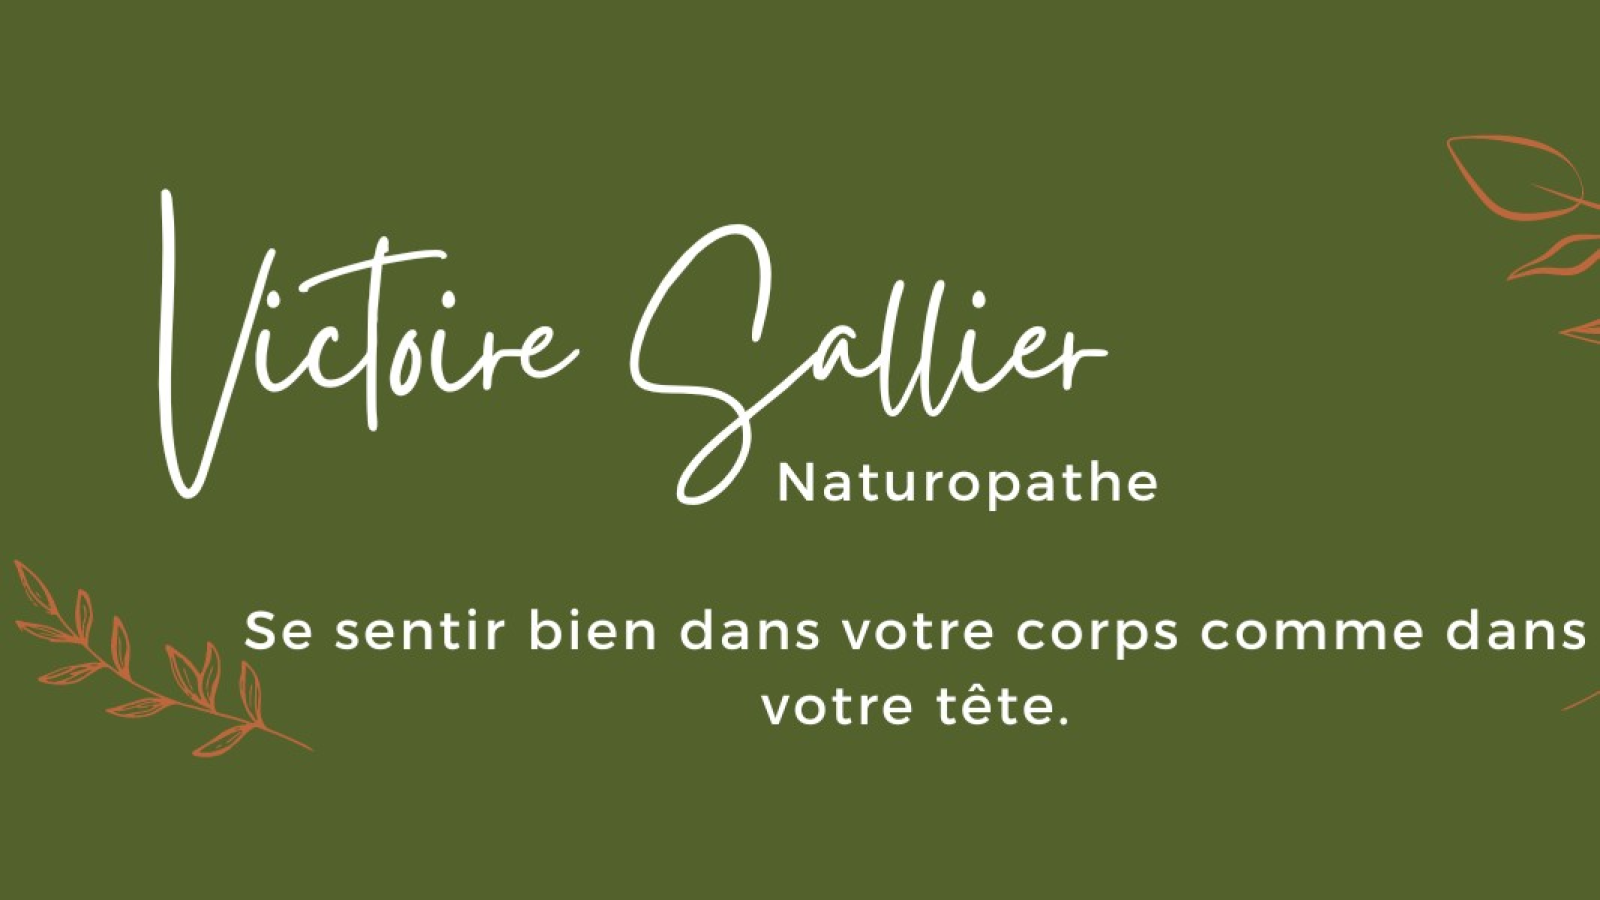 Victoire Sallier Naturopathe